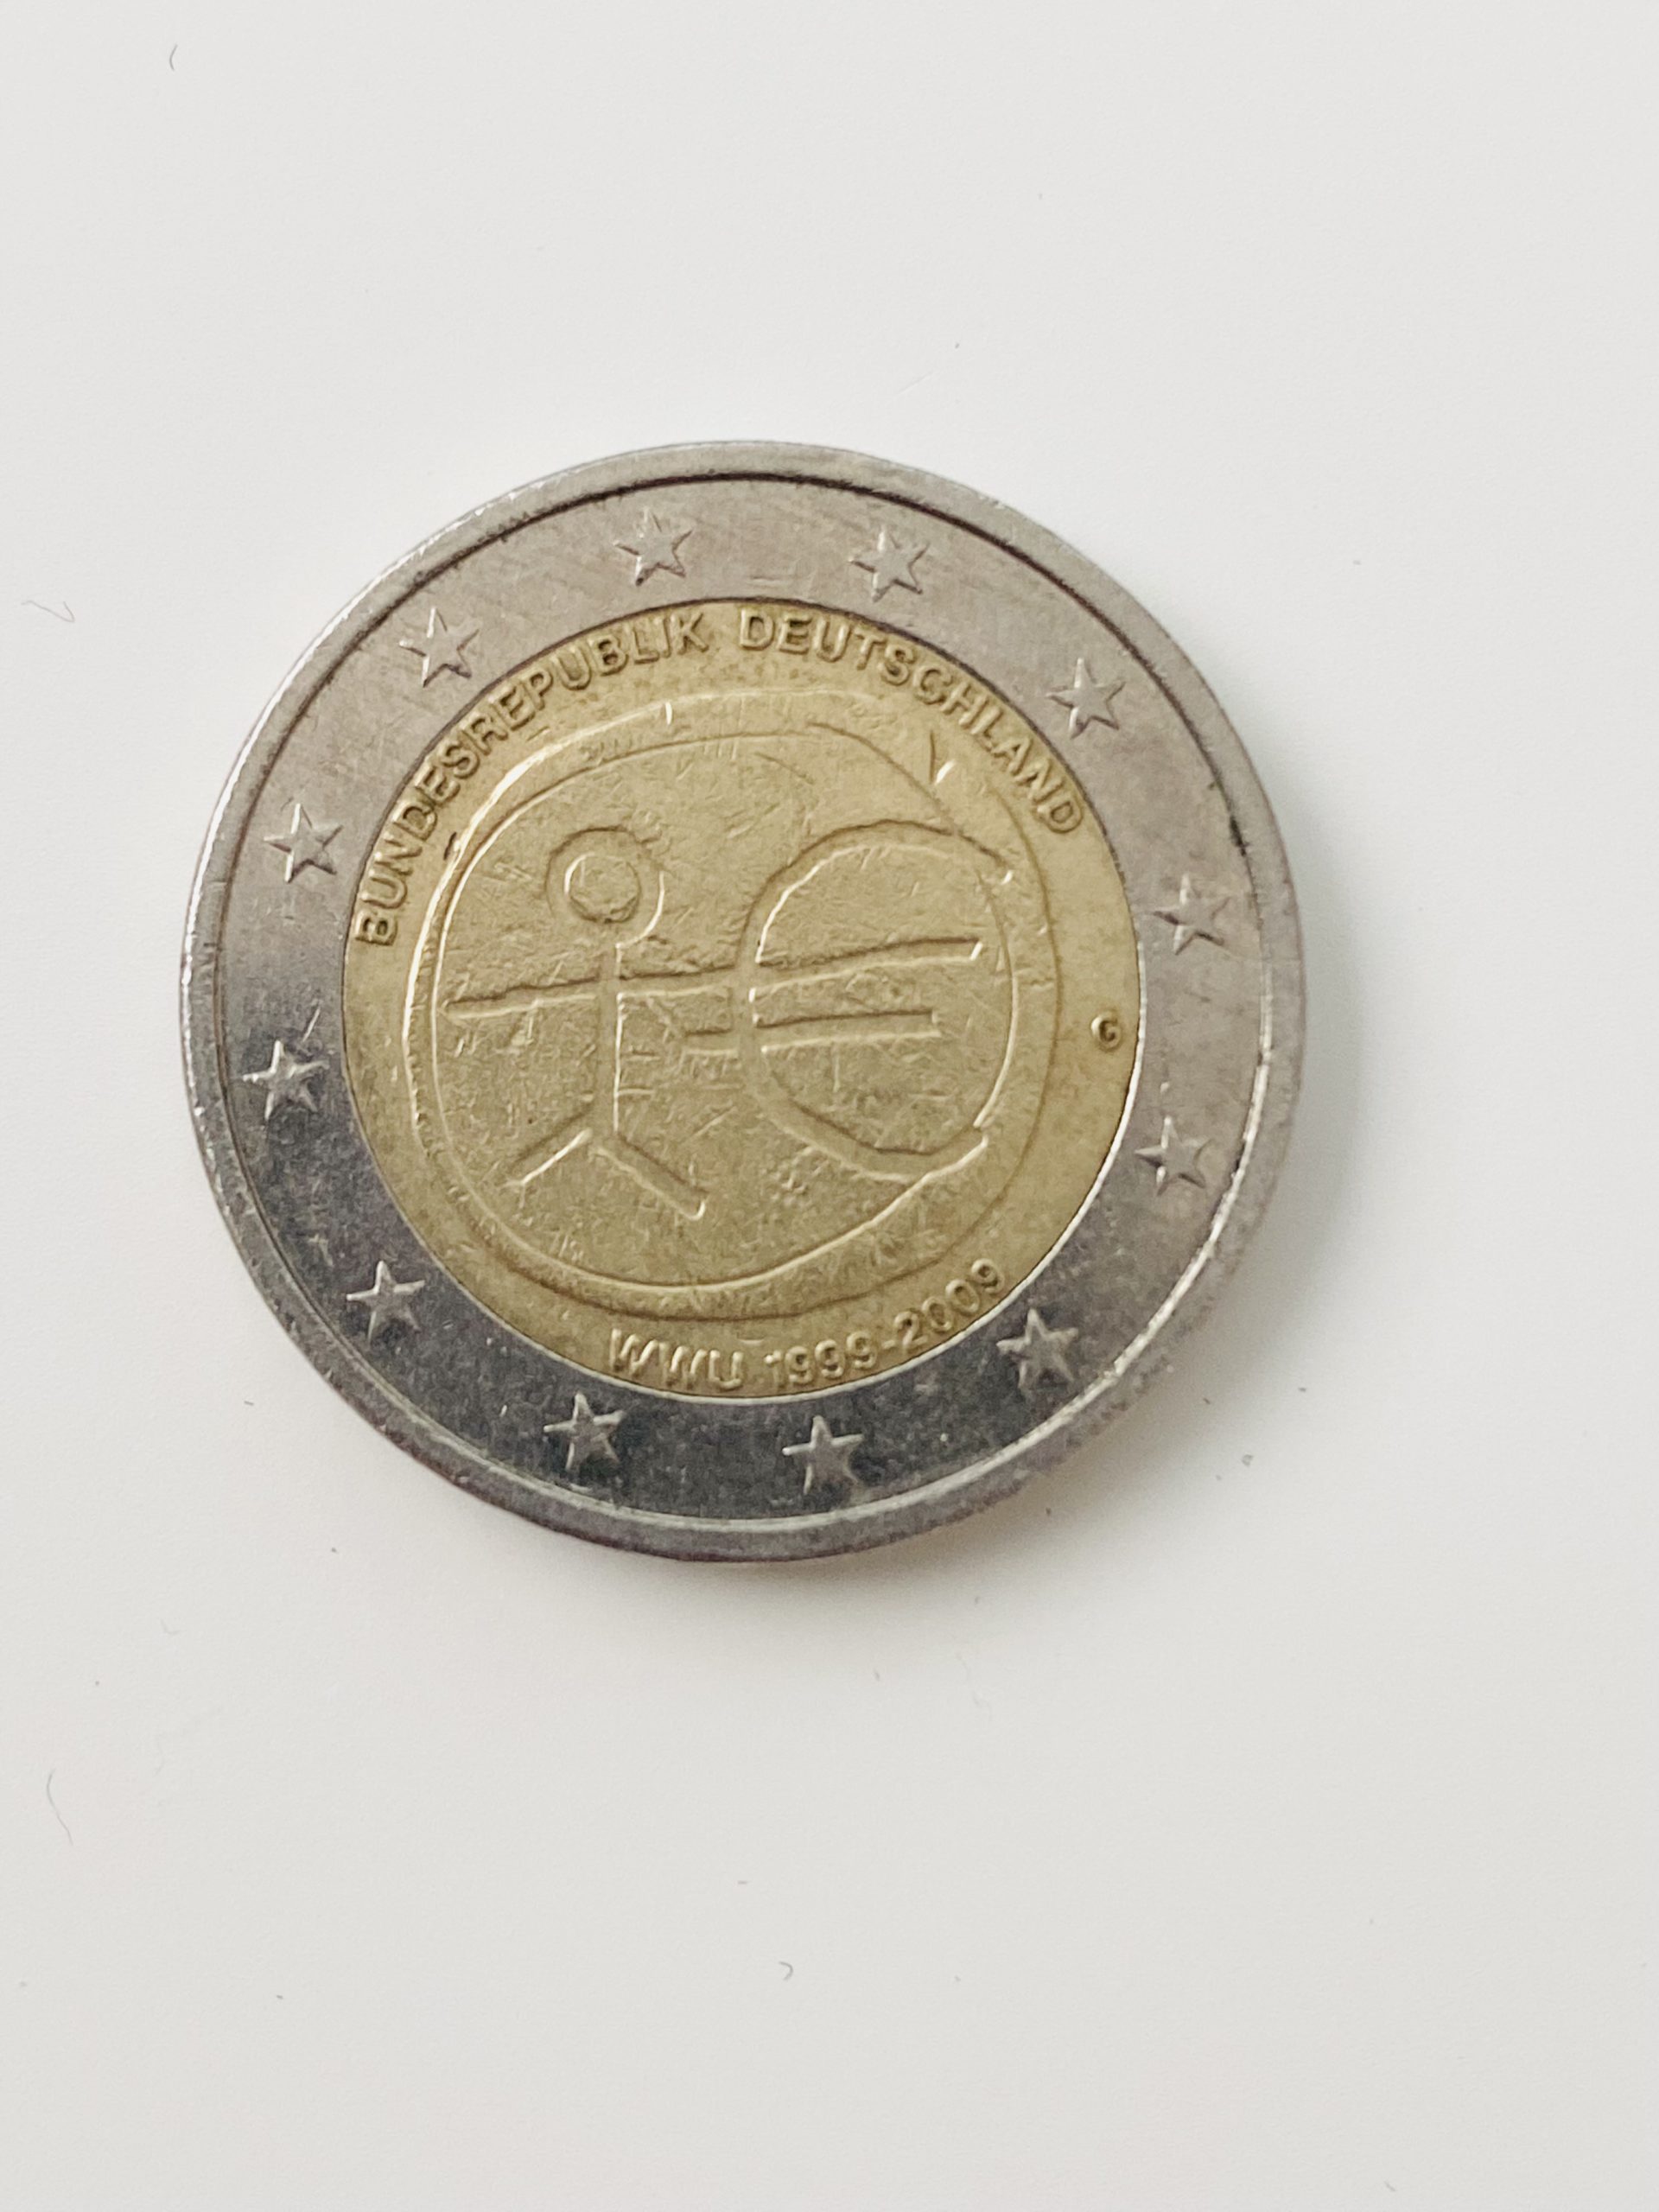 mint error coin – 2 Euro Seltene Münze WWU 1999-2009 Fehlprägung